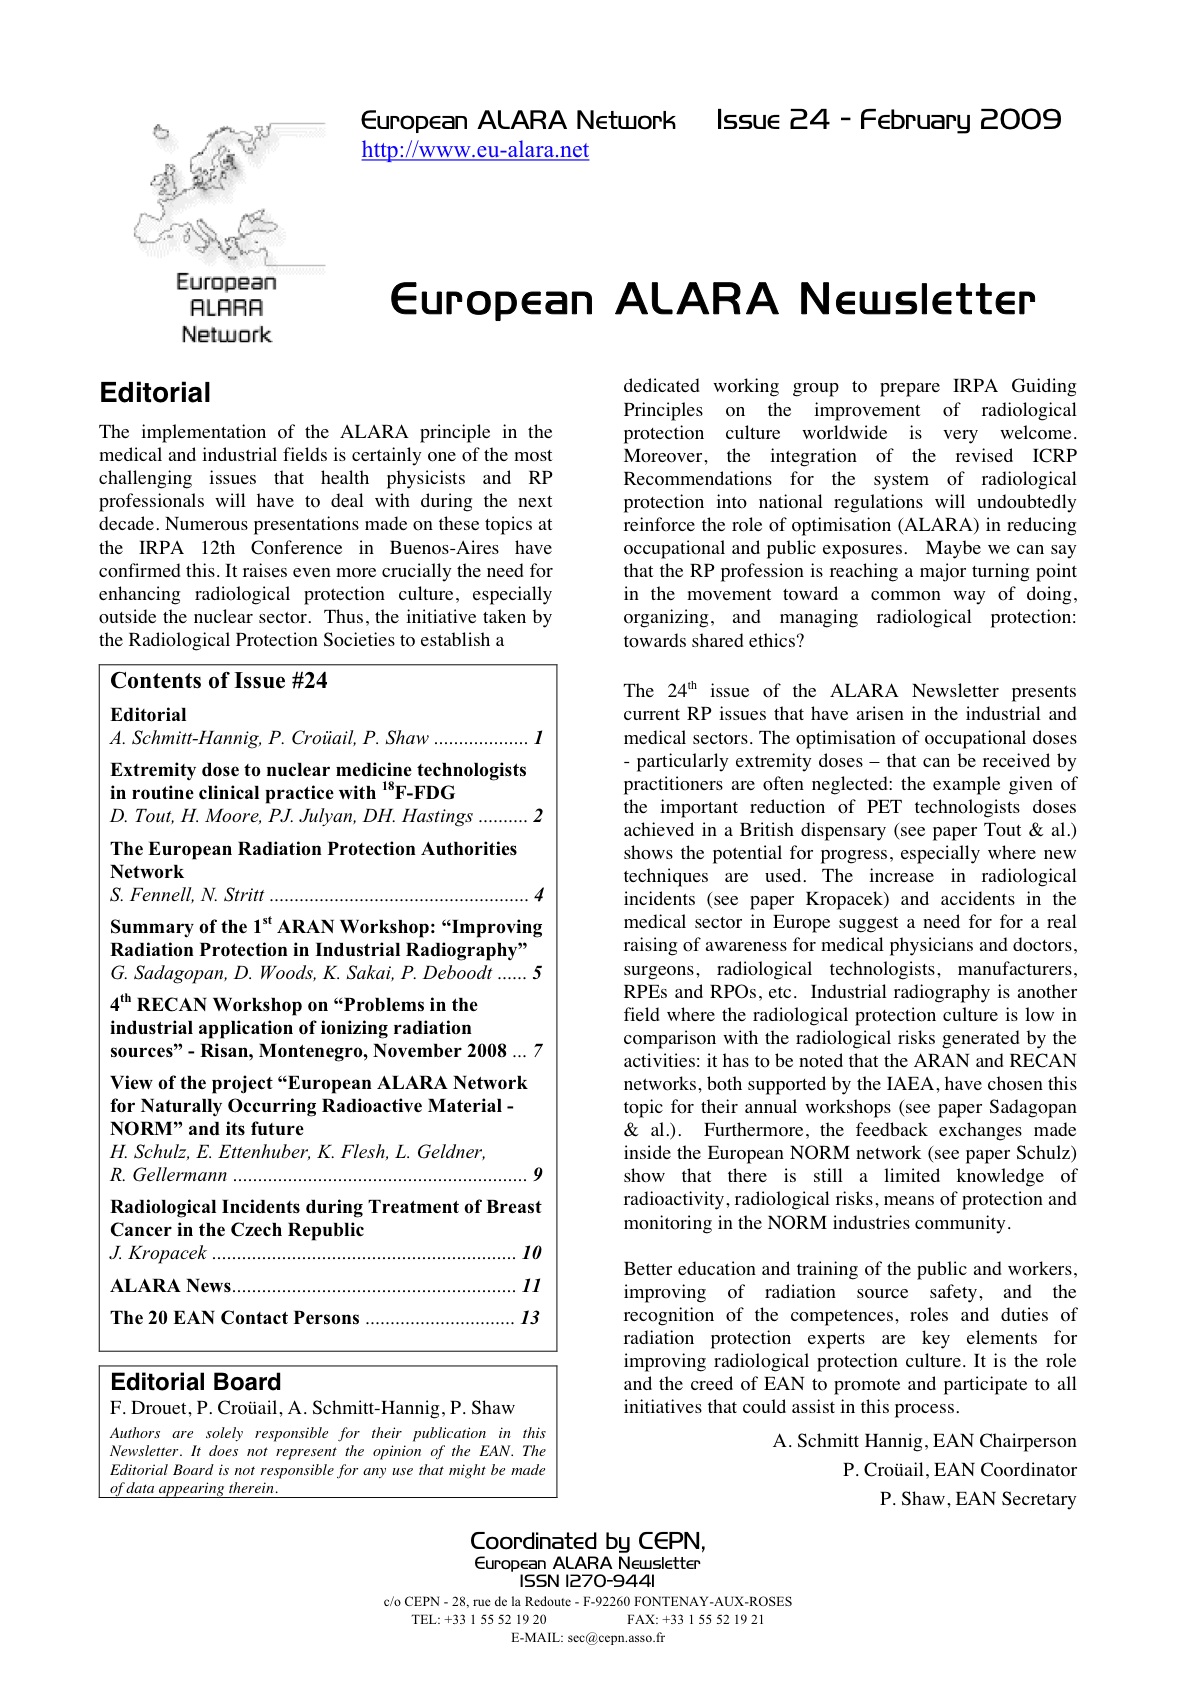 alara-newsletter-24.jpg